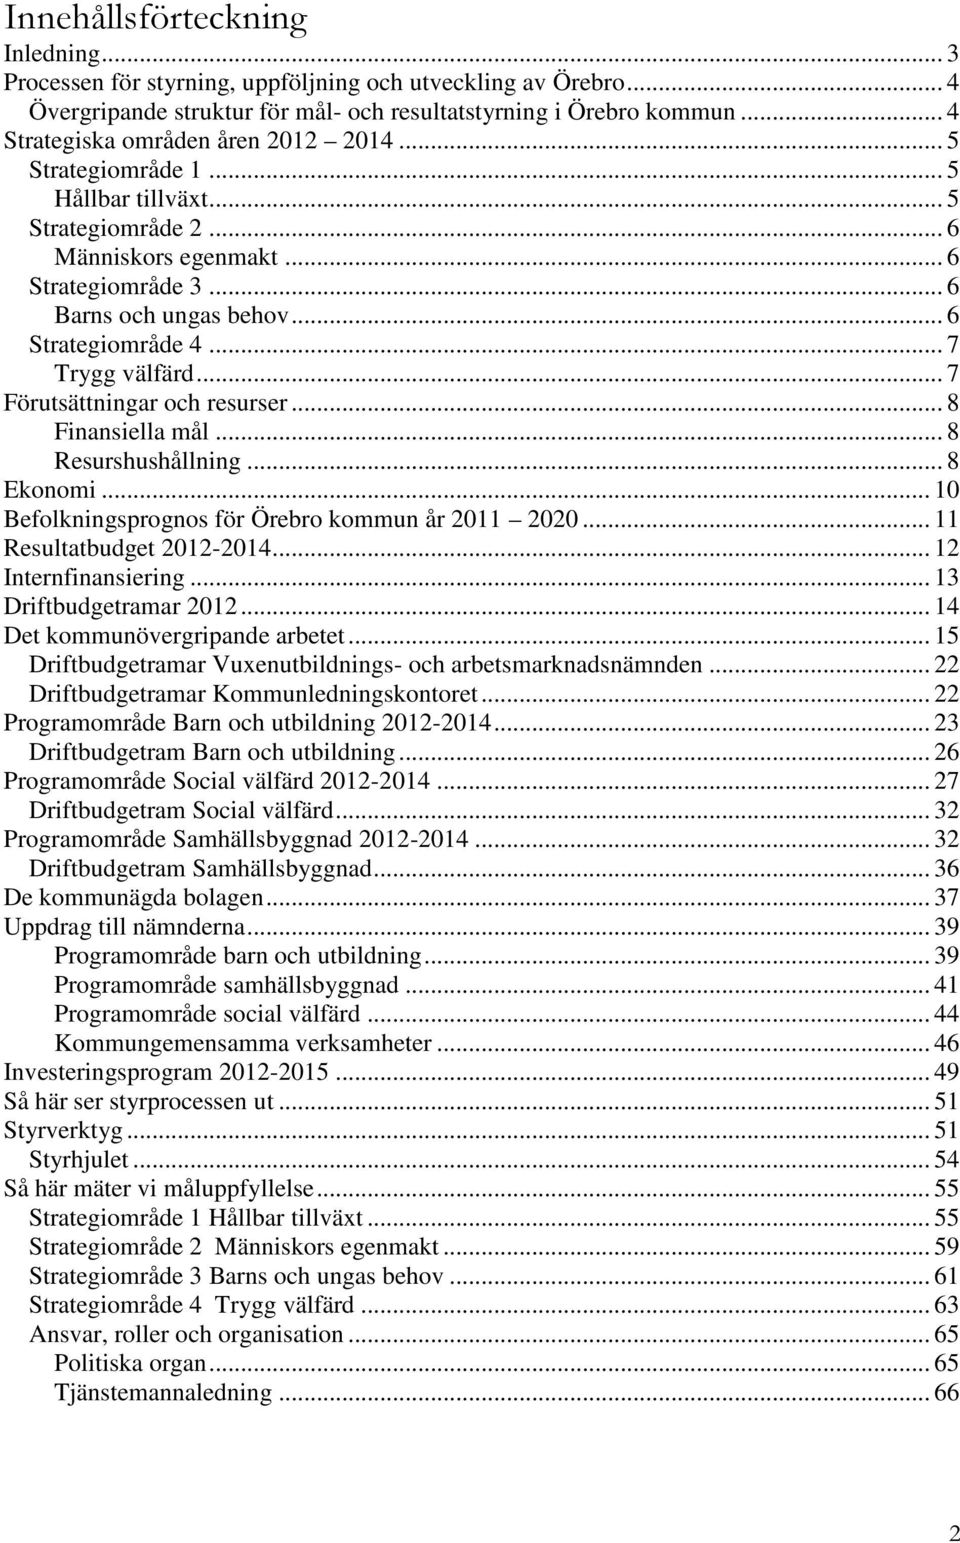 .. 7 Trygg välfärd... 7 Förutsättningar och resurser... 8 Finansiella mål... 8 Resurshushållning... 8 Ekonomi... 10 Befolkningsprognos för Örebro kommun år 2011 2020... 11 Resultatbudget 2012-2014.